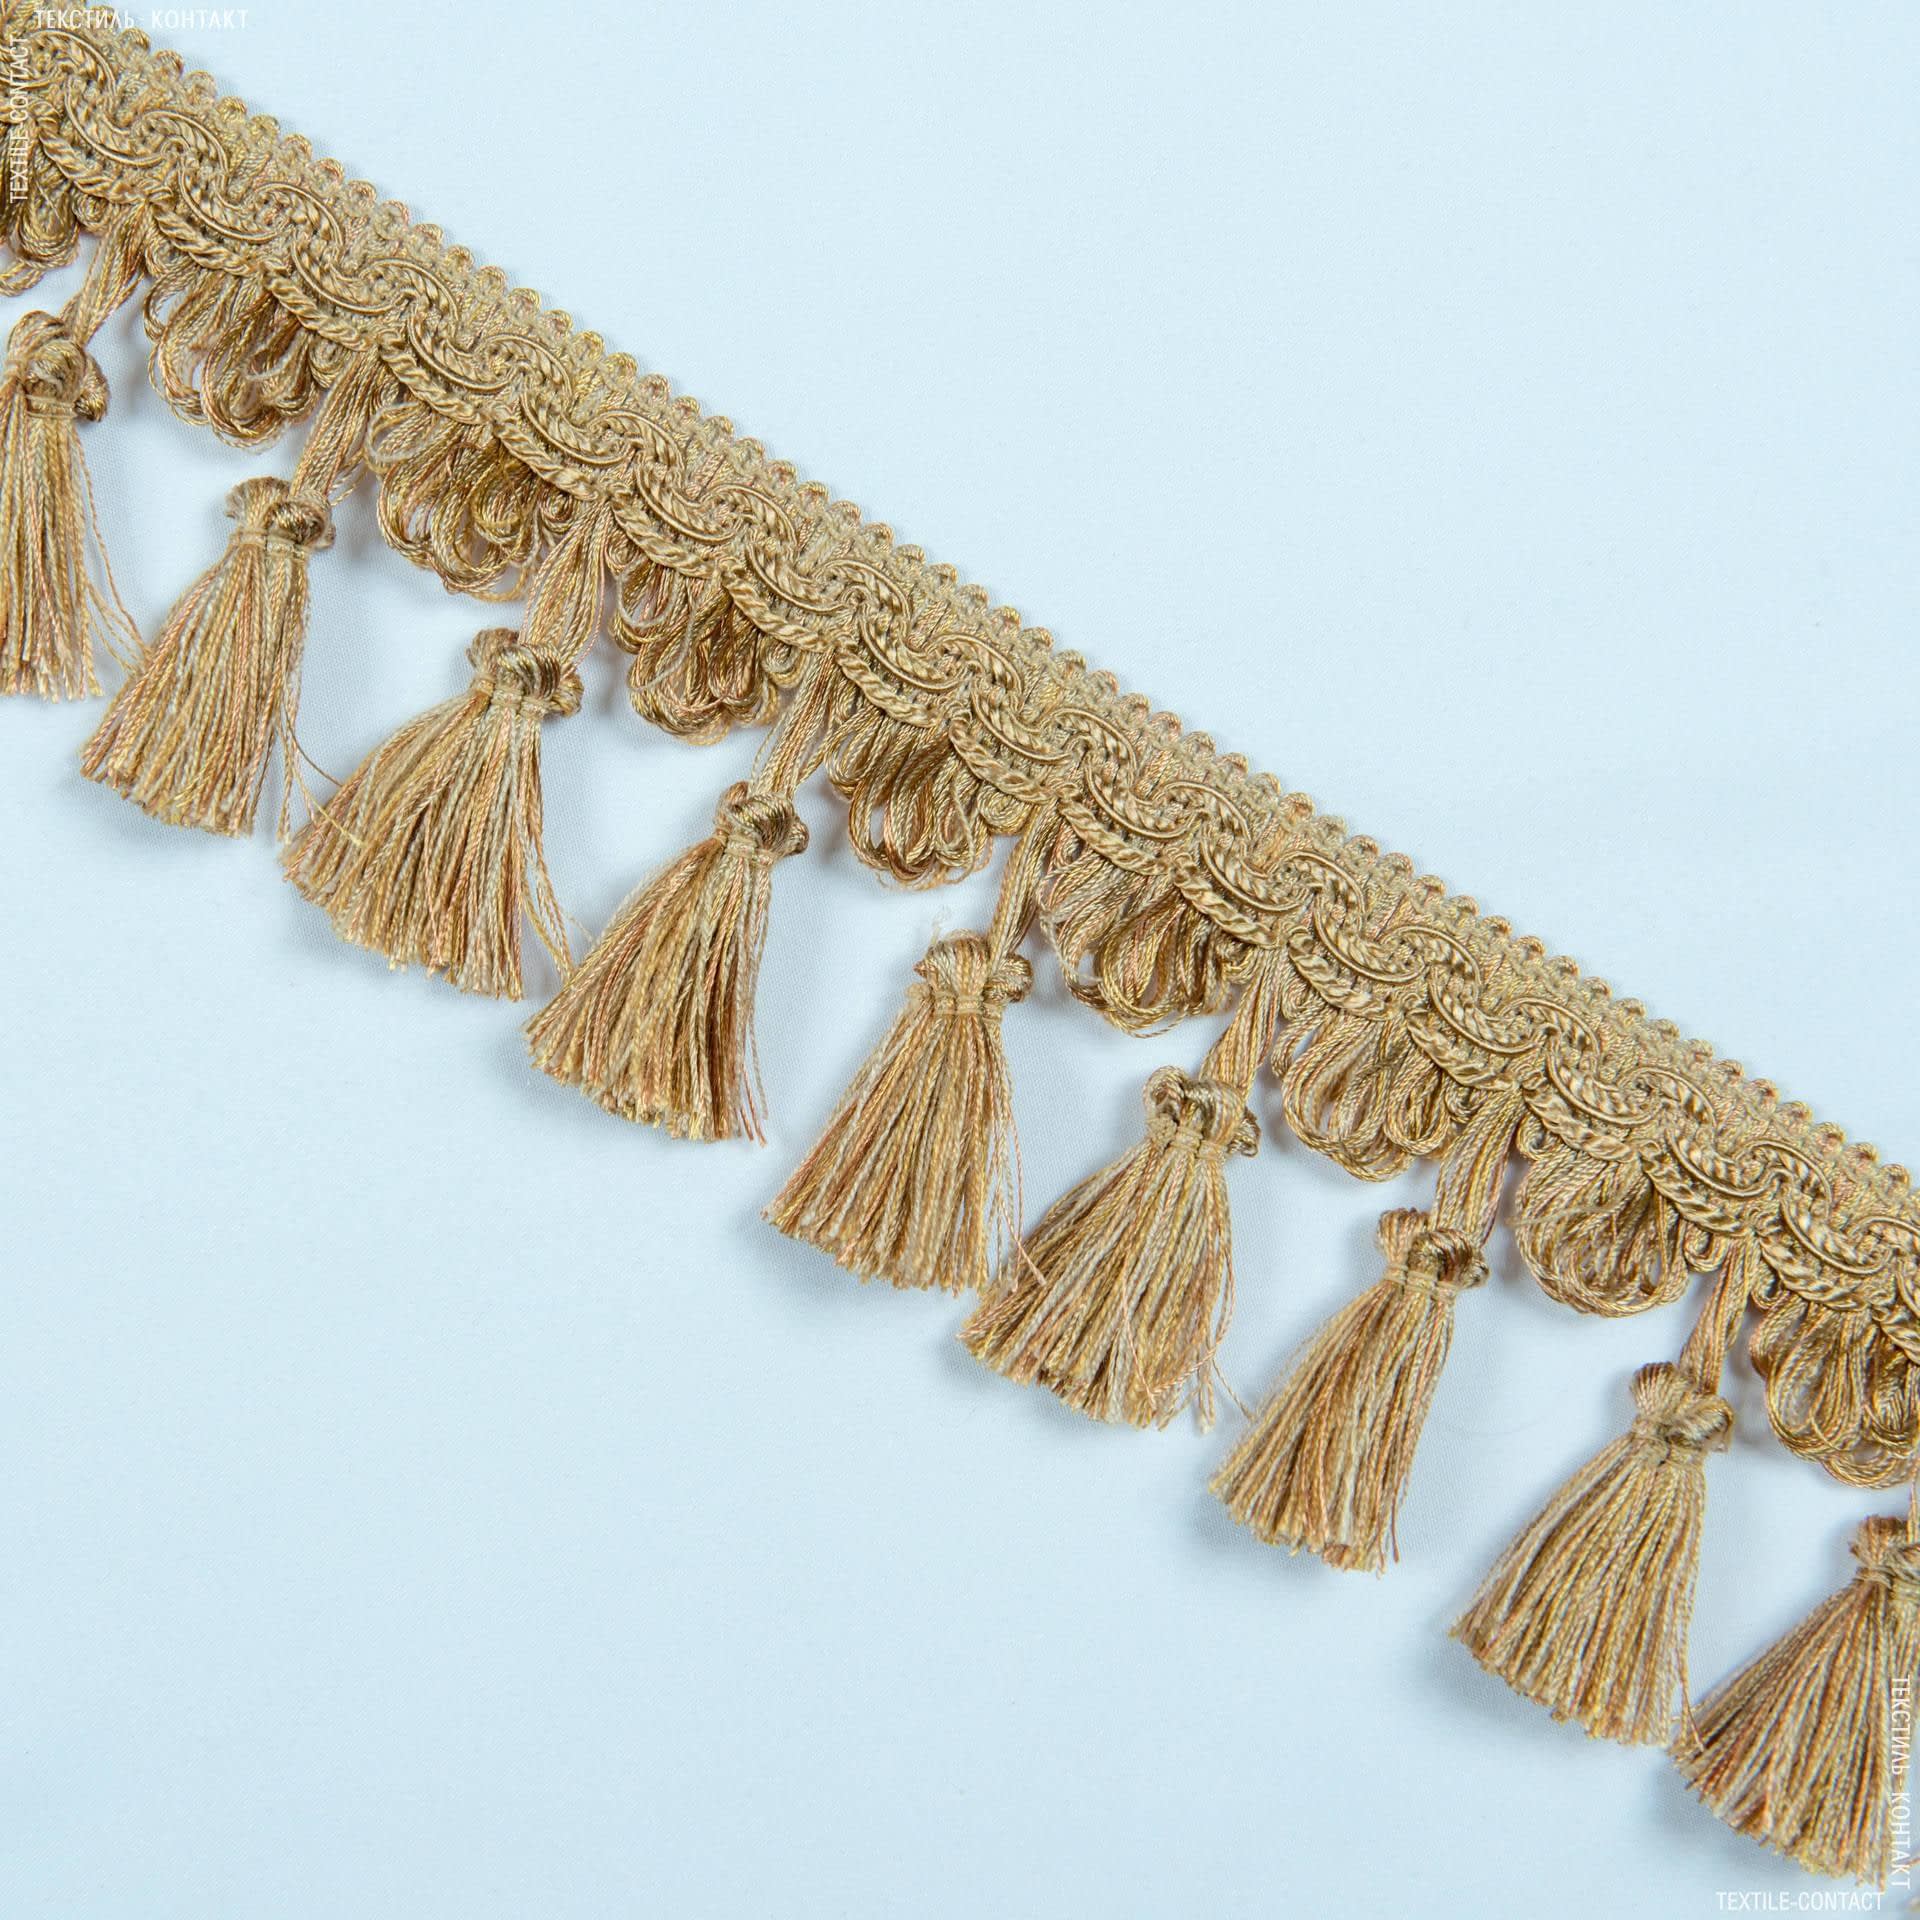 Ткани фурнитура для декора - Бахрома солар кисточка карамель